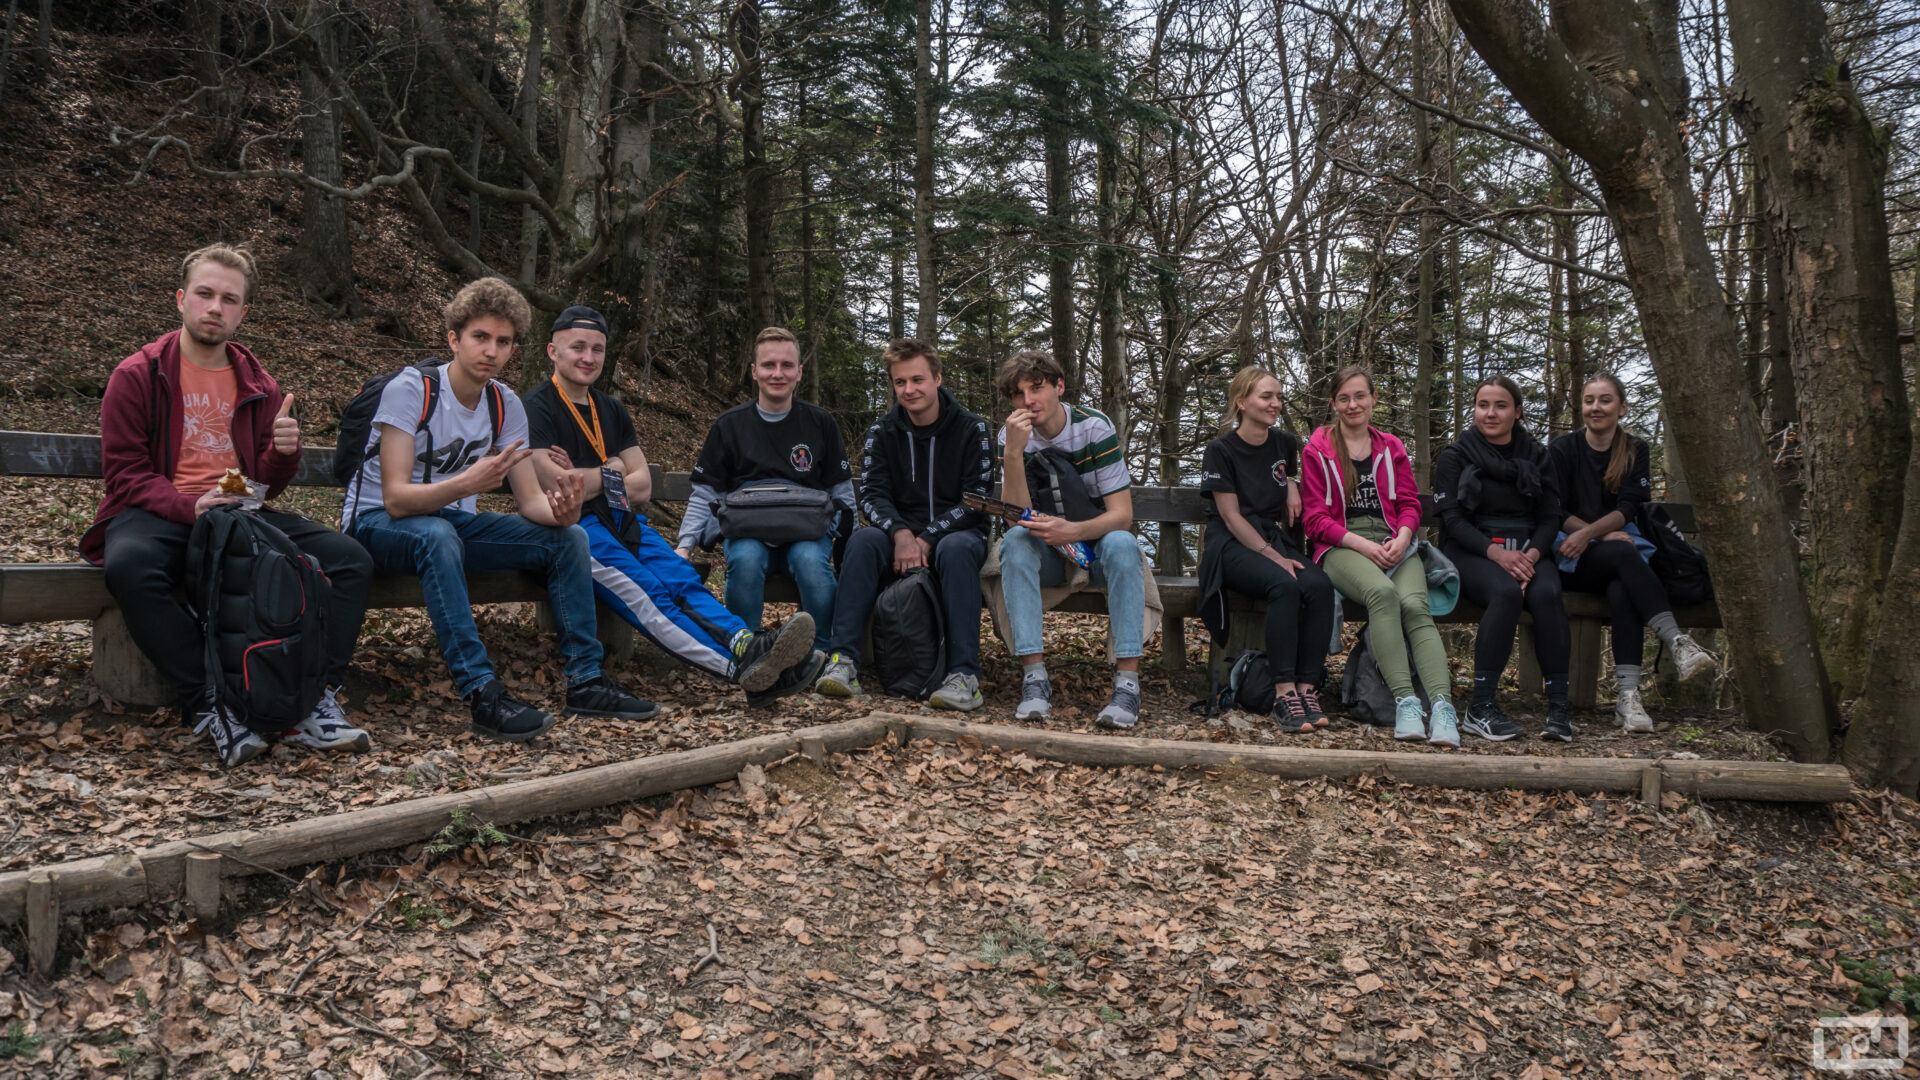 Studenci i studentki ubrani w stroje górskie siedza na drewnianej ławce w lesie. Przed nimi znajdują się opadające liście..